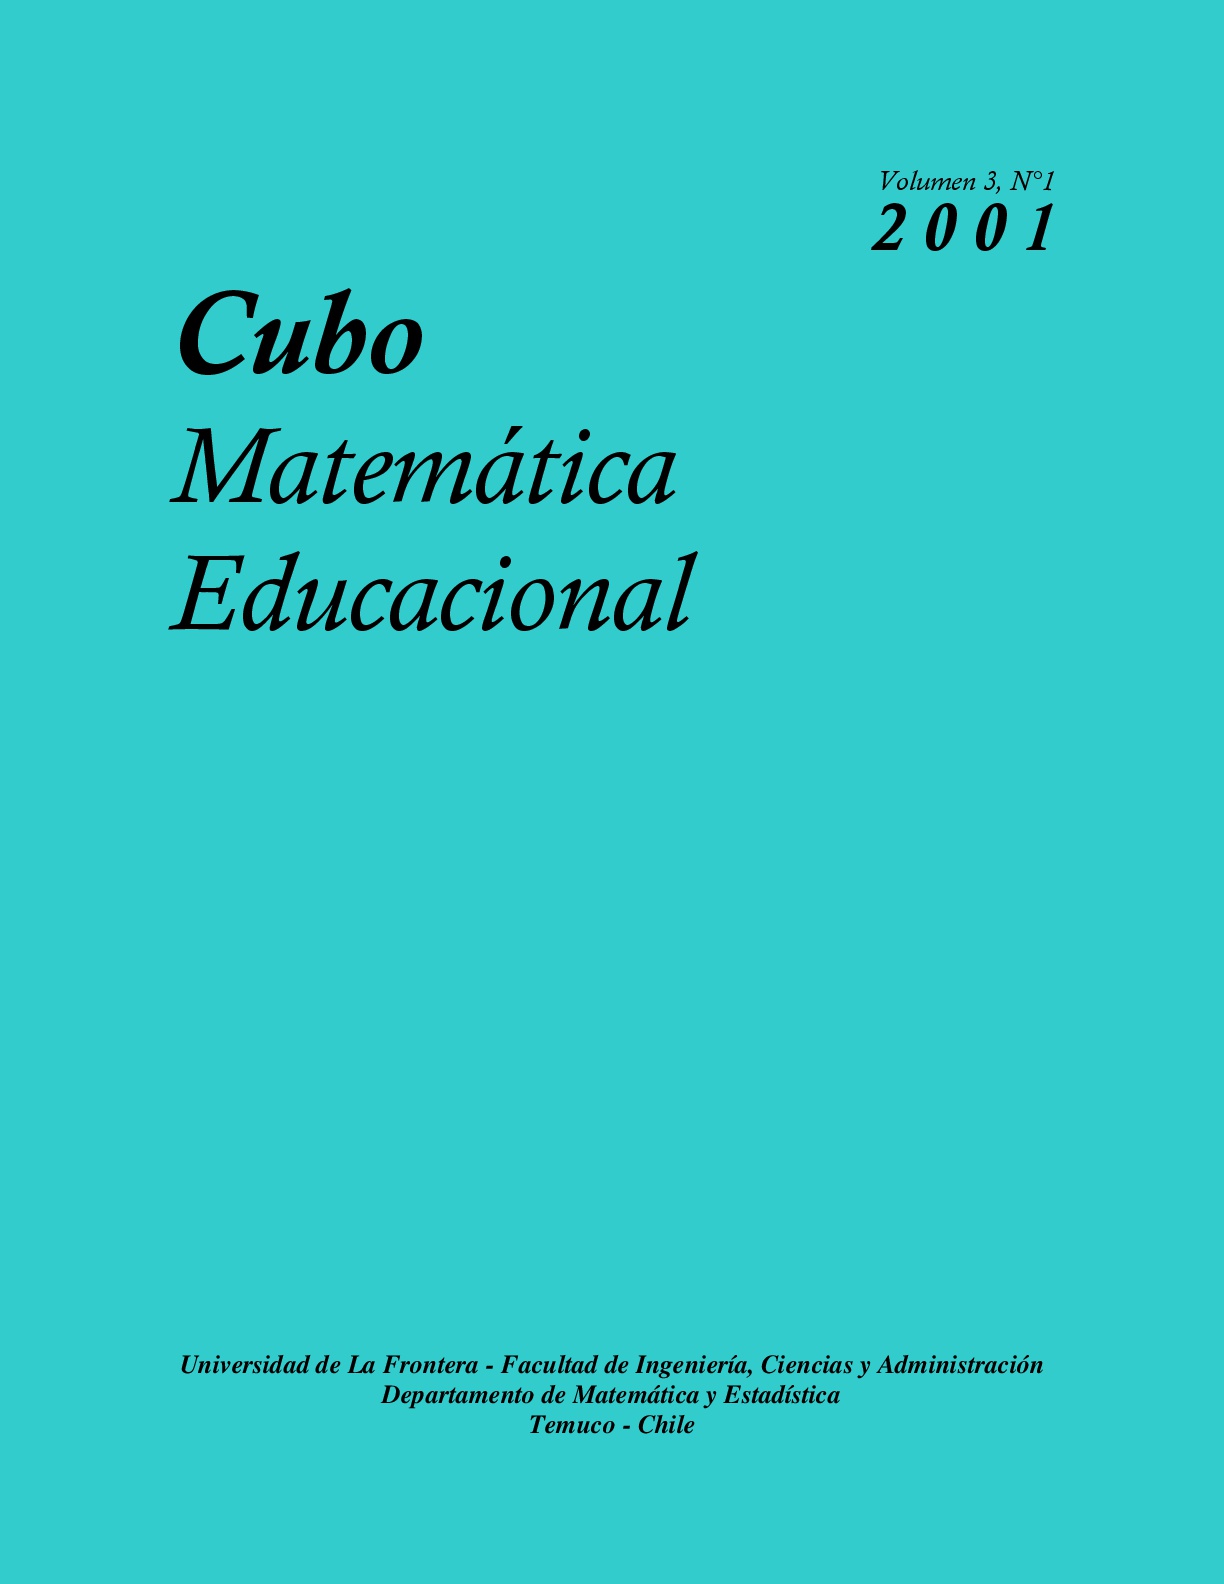 					View Vol. 3 No. 1 (2001): CUBO, Matemática Educacional
				